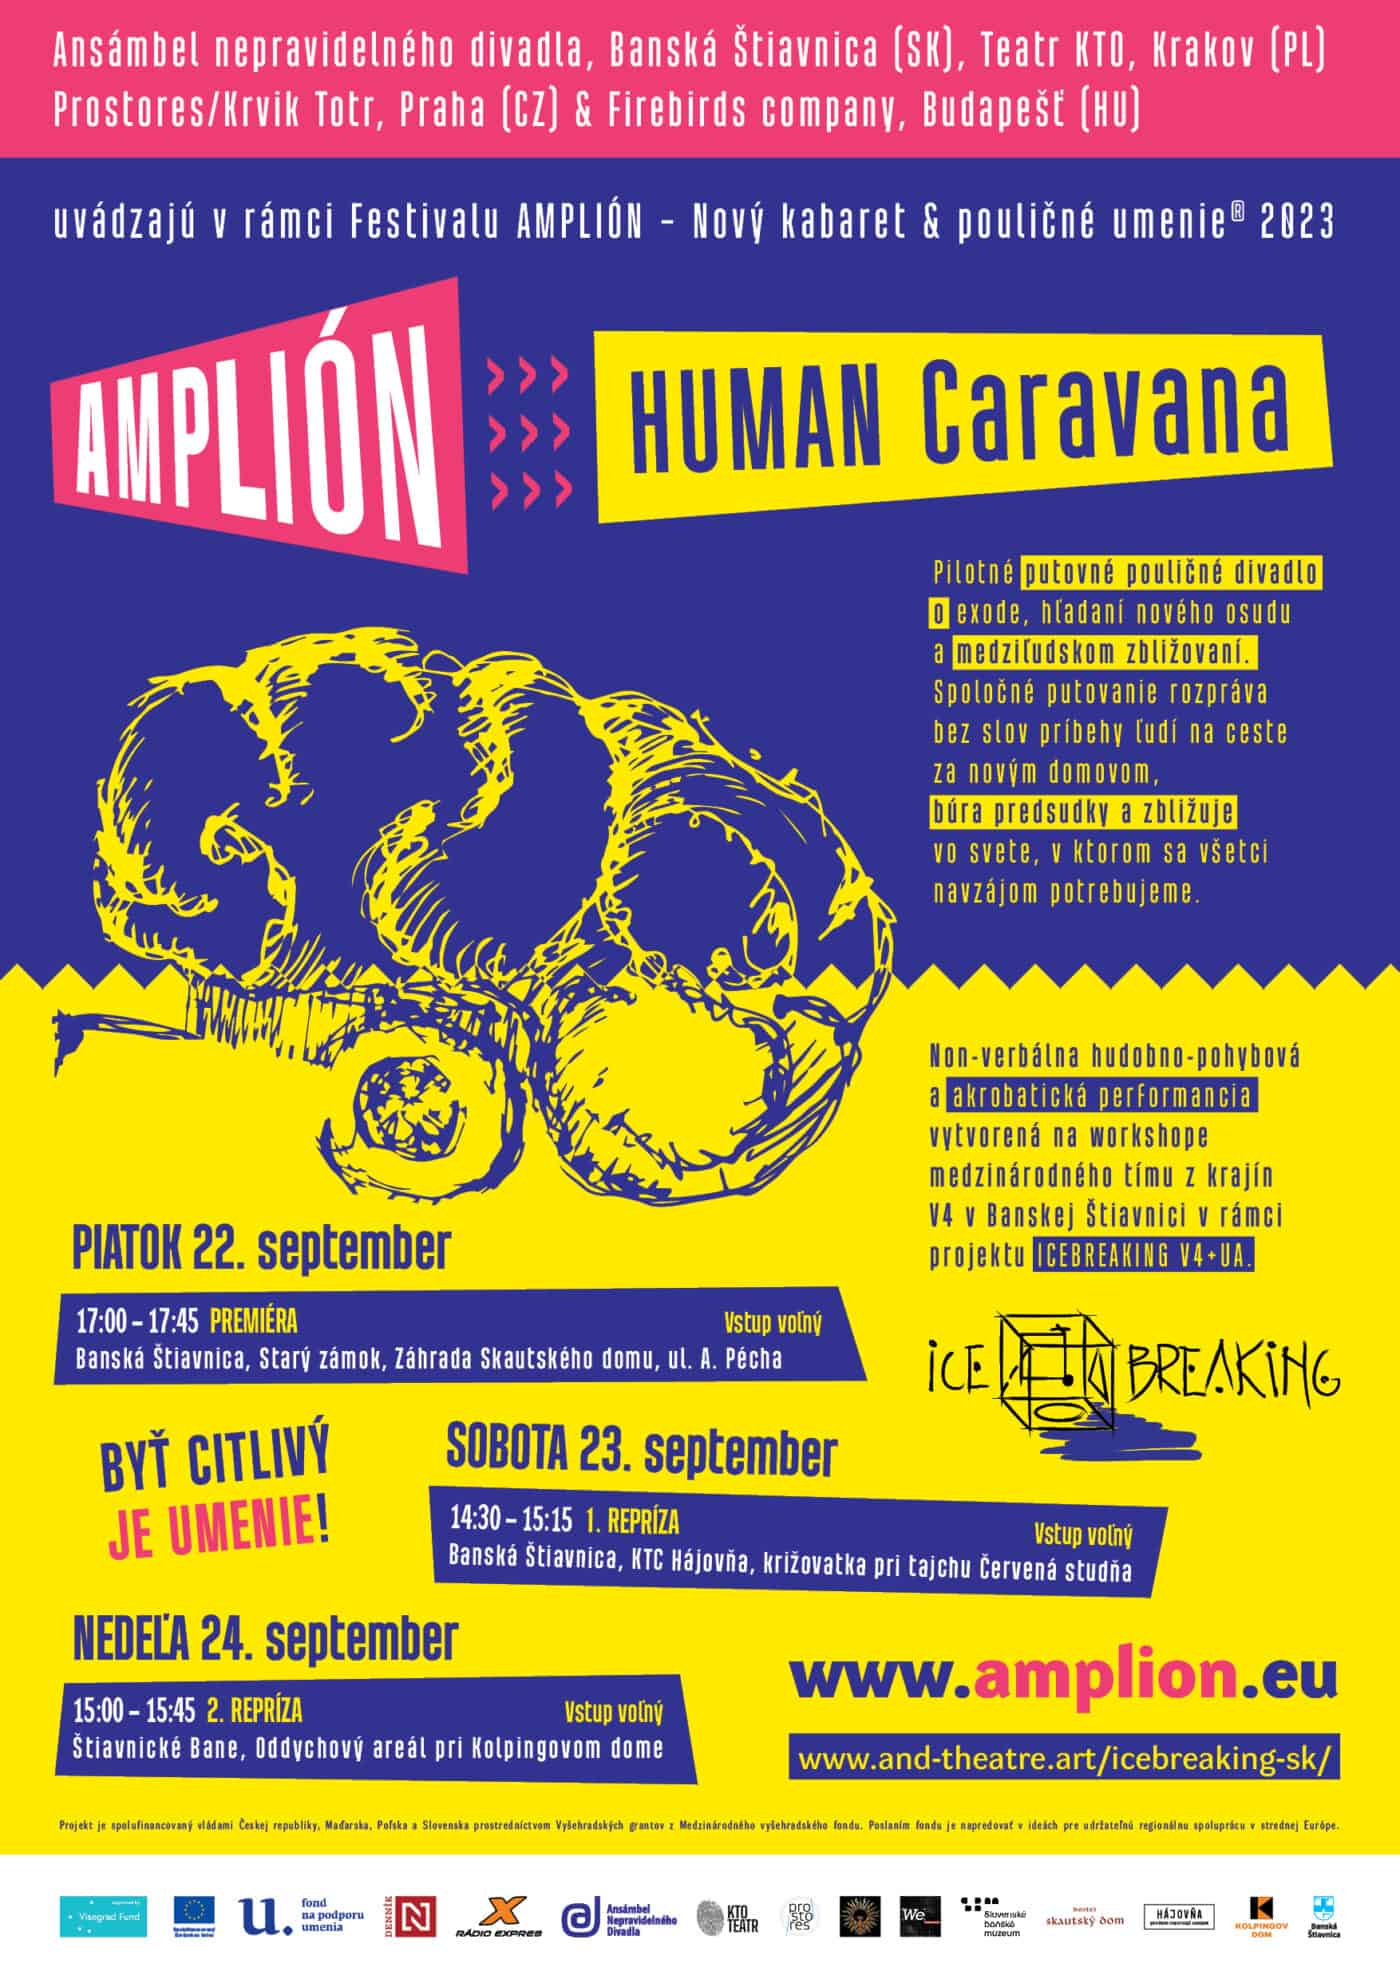 Pozvánka na představení Human Caravan 23. září 2023 v Banské Štiavnici